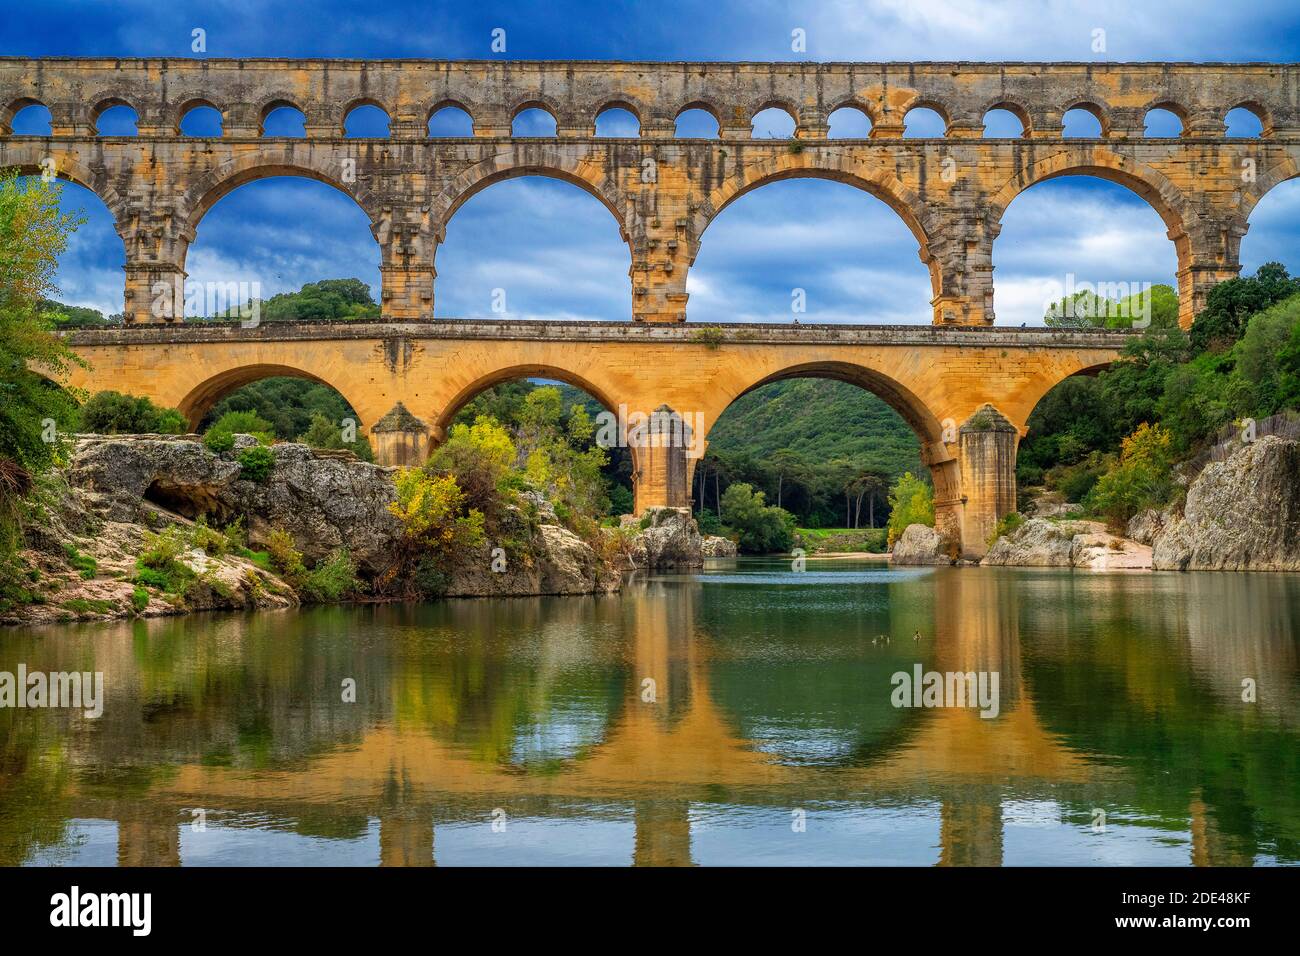 Pont du Gard, Languedoc Roussillon Region, Frankreich, UNESCO-Weltkulturerbe. Das römische Aquädukt überquert den Fluss Gardon bei der Nähe von Vers-Pon-du-Gard Languedo Stockfoto